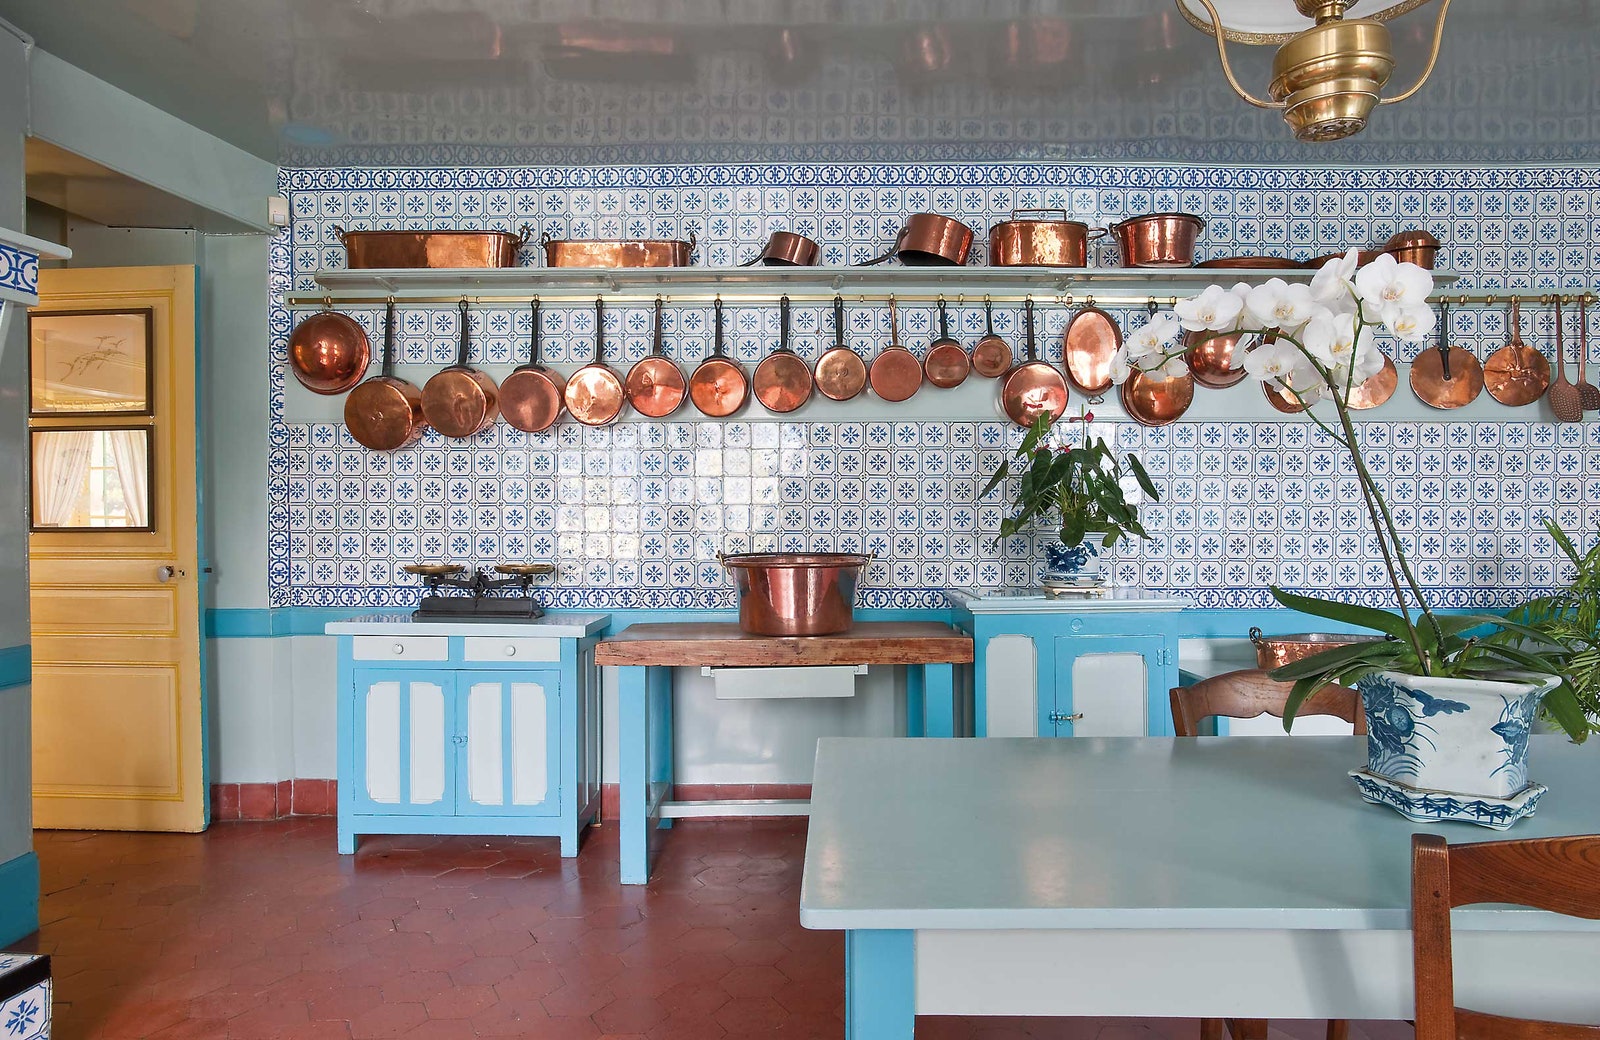 Кухня тоже выдержана в синих тонах стены отделаны местной изразцовой плиткой.